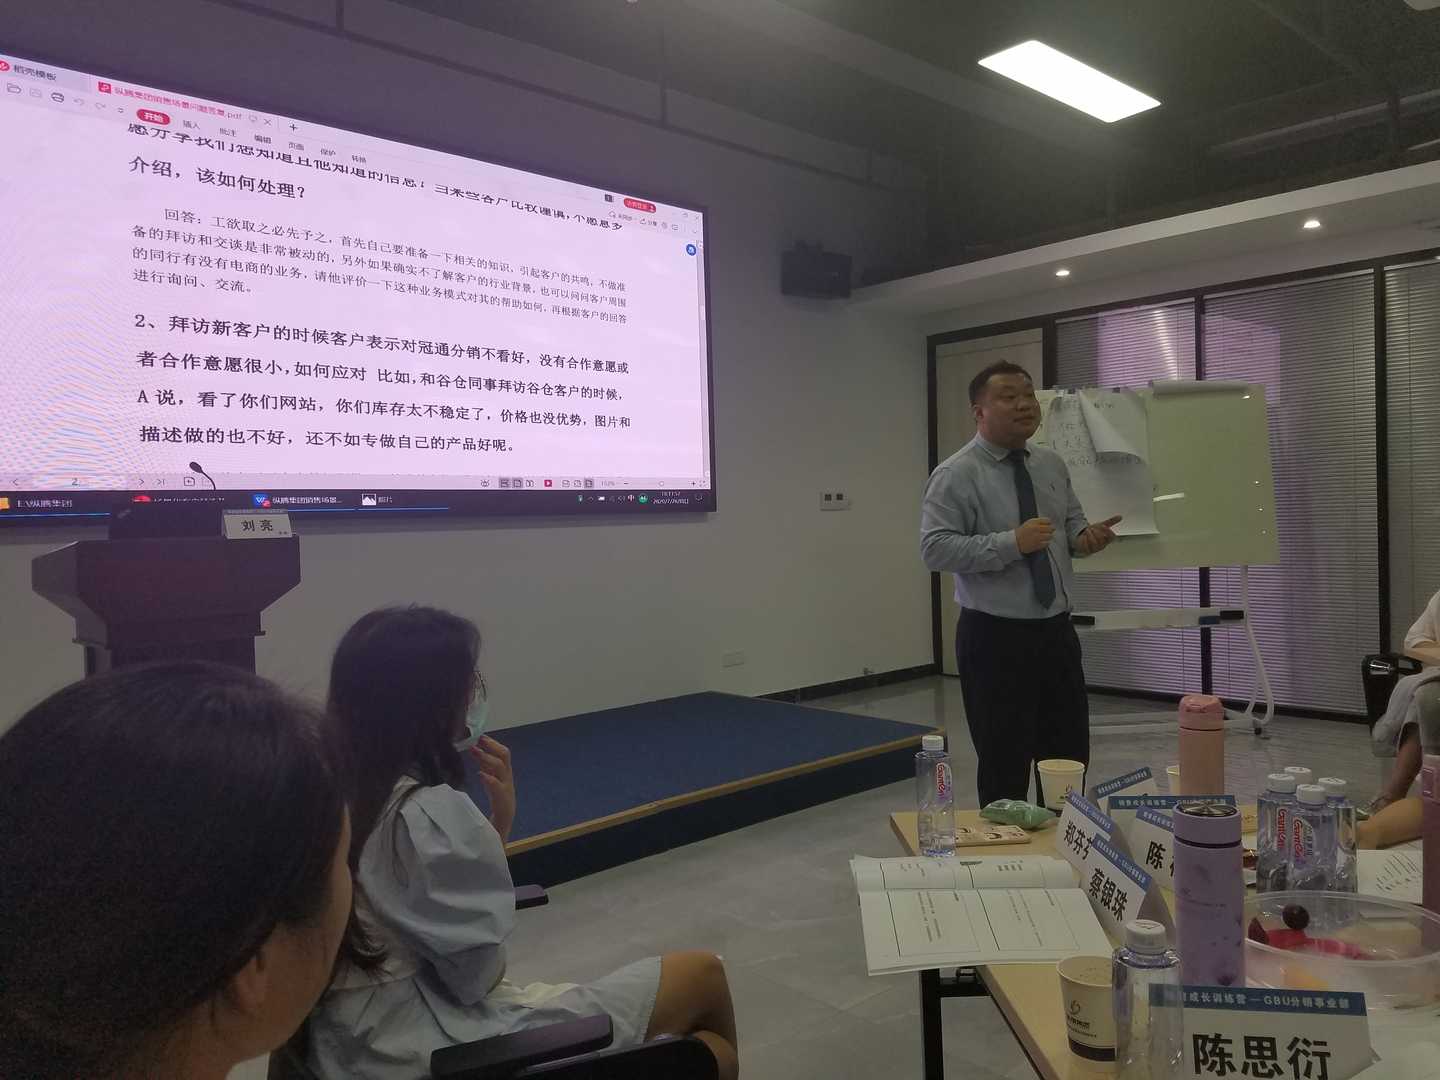  2020-07-26刘亮老师为福建纵腾网络有限公司讲授《销售拜访与谈判》课程